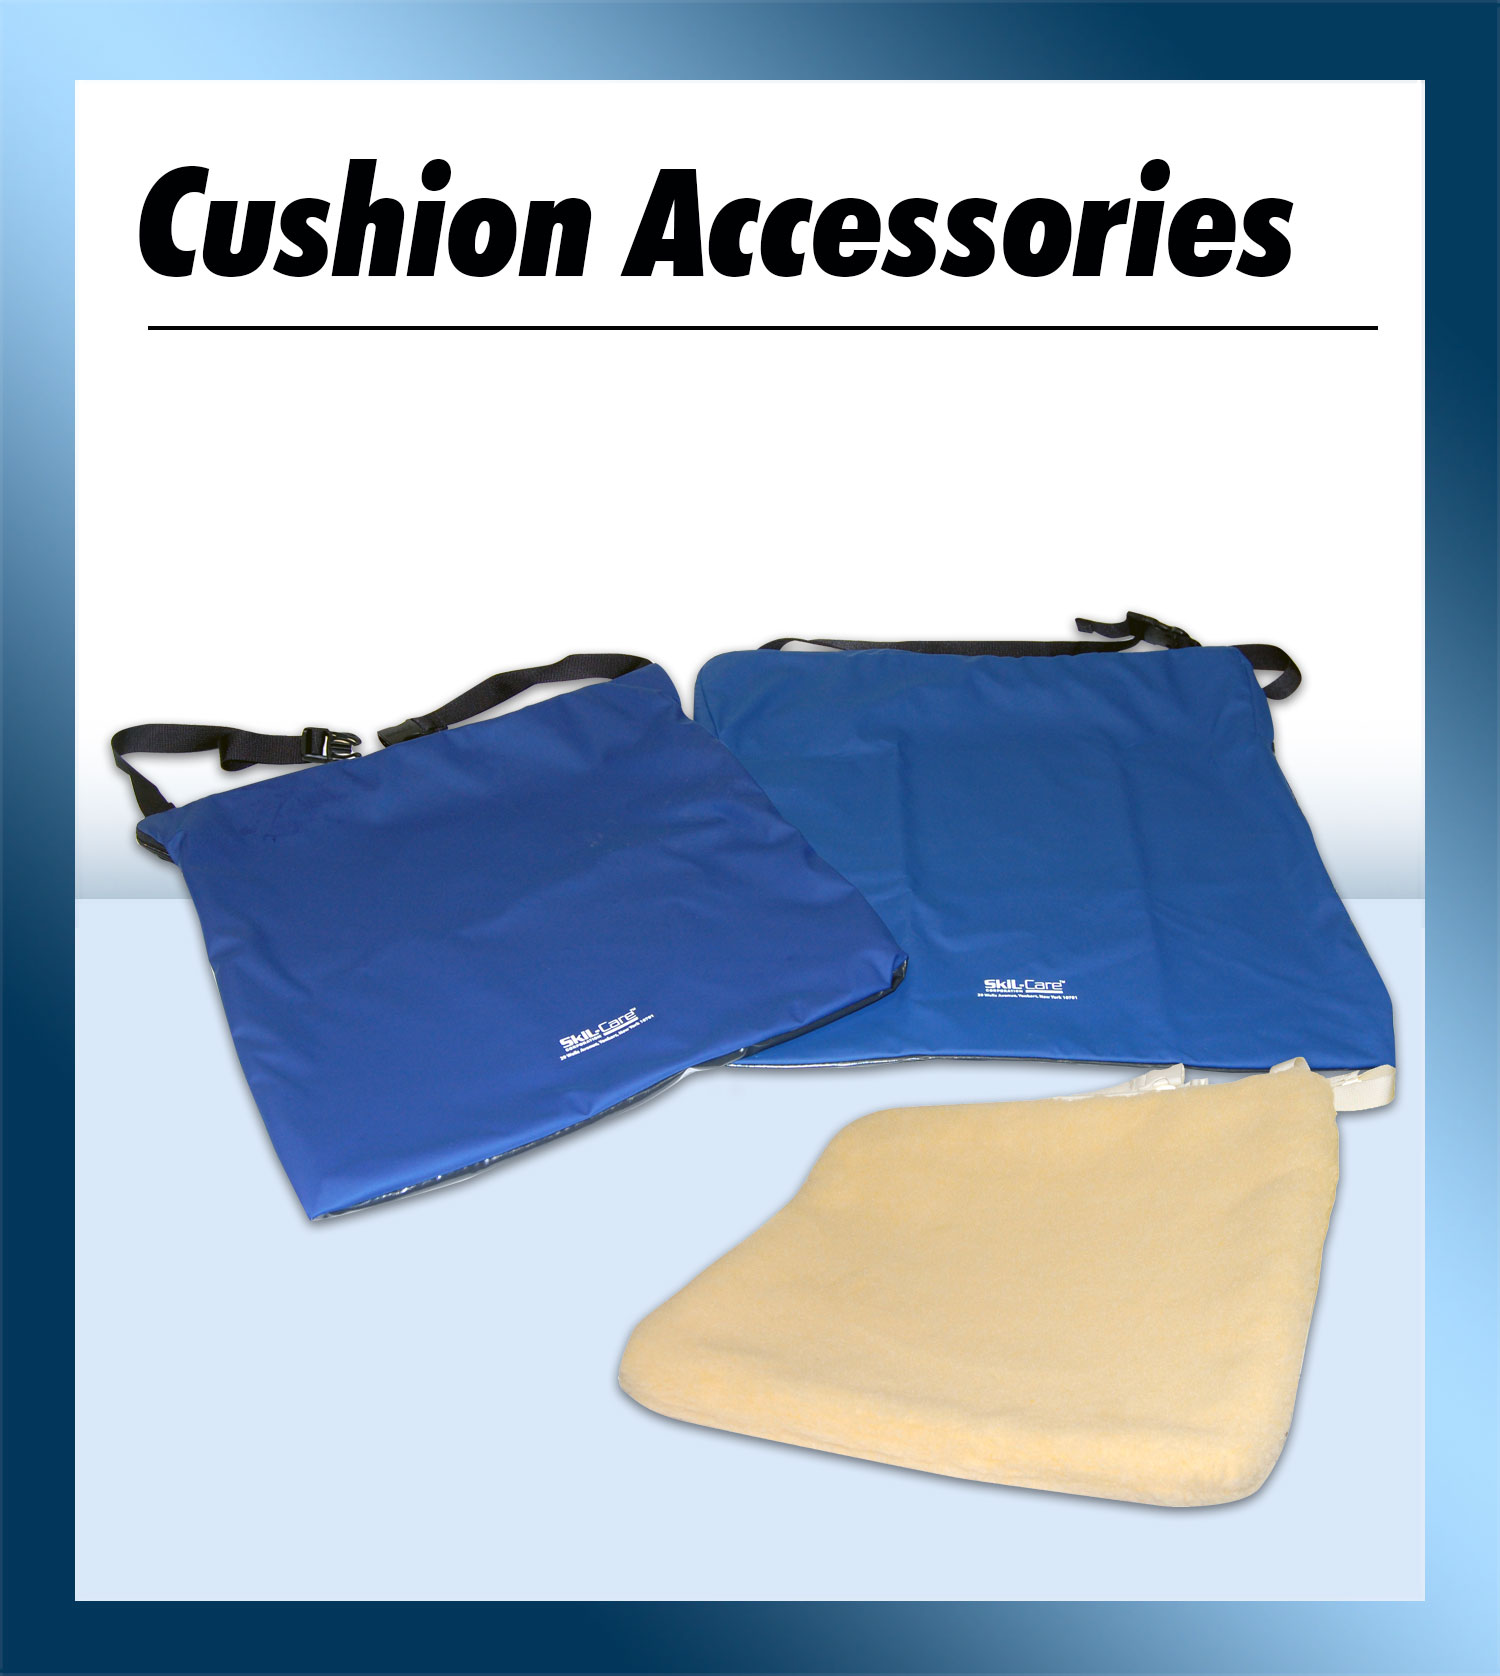 Cushion Accessories